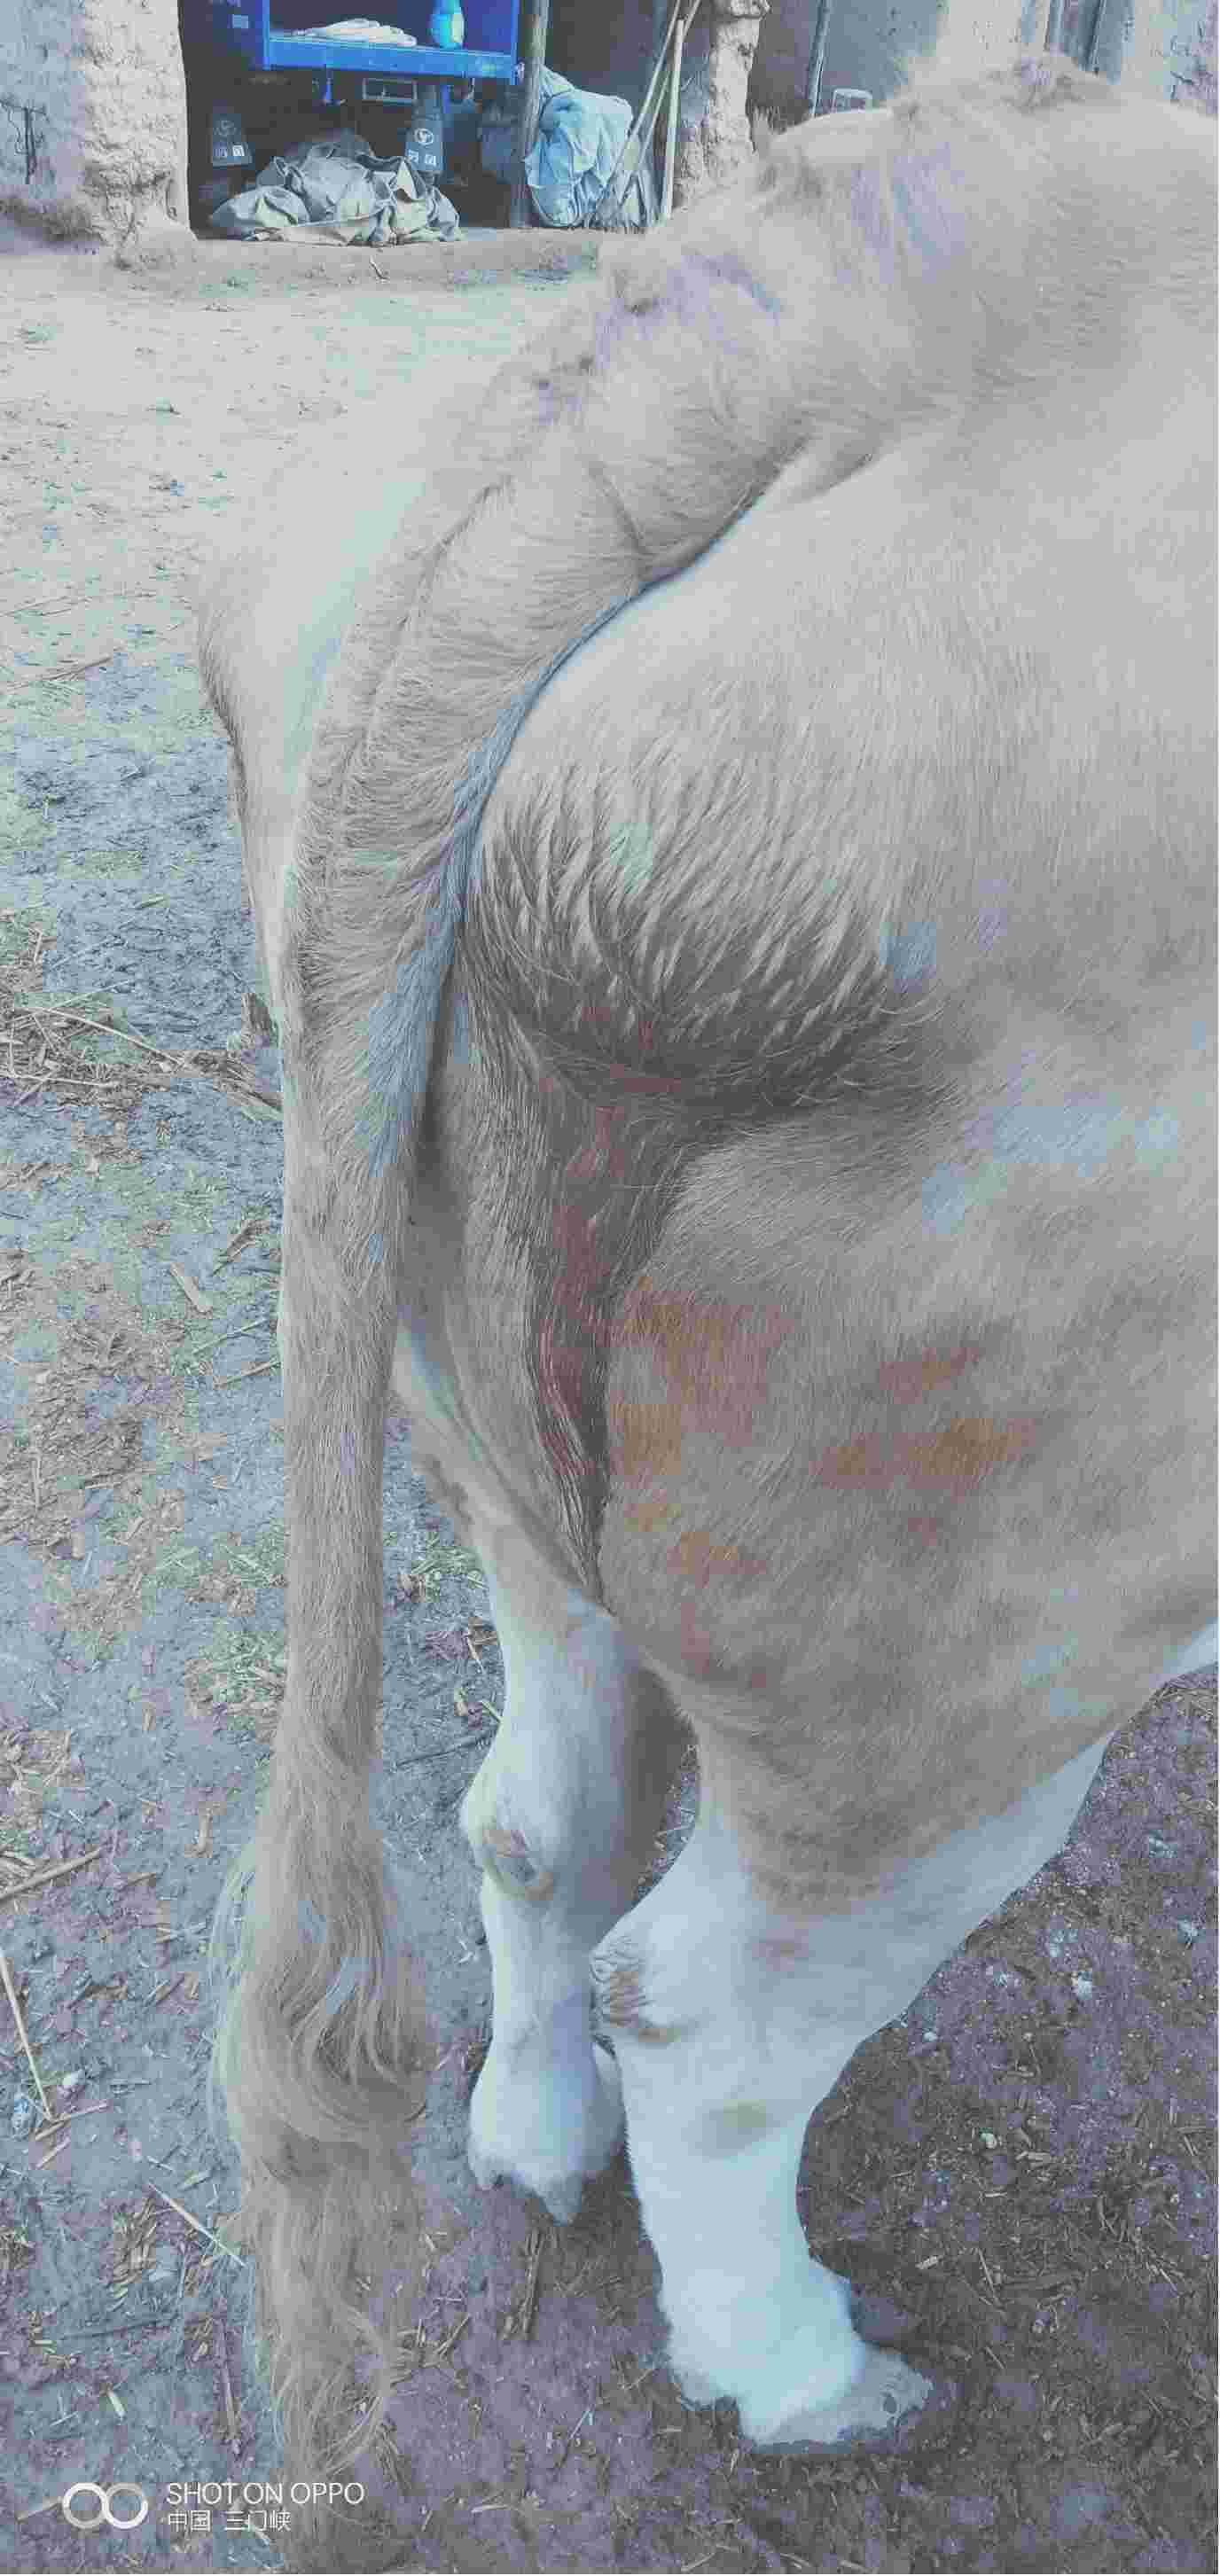 马的水门肿胀图片